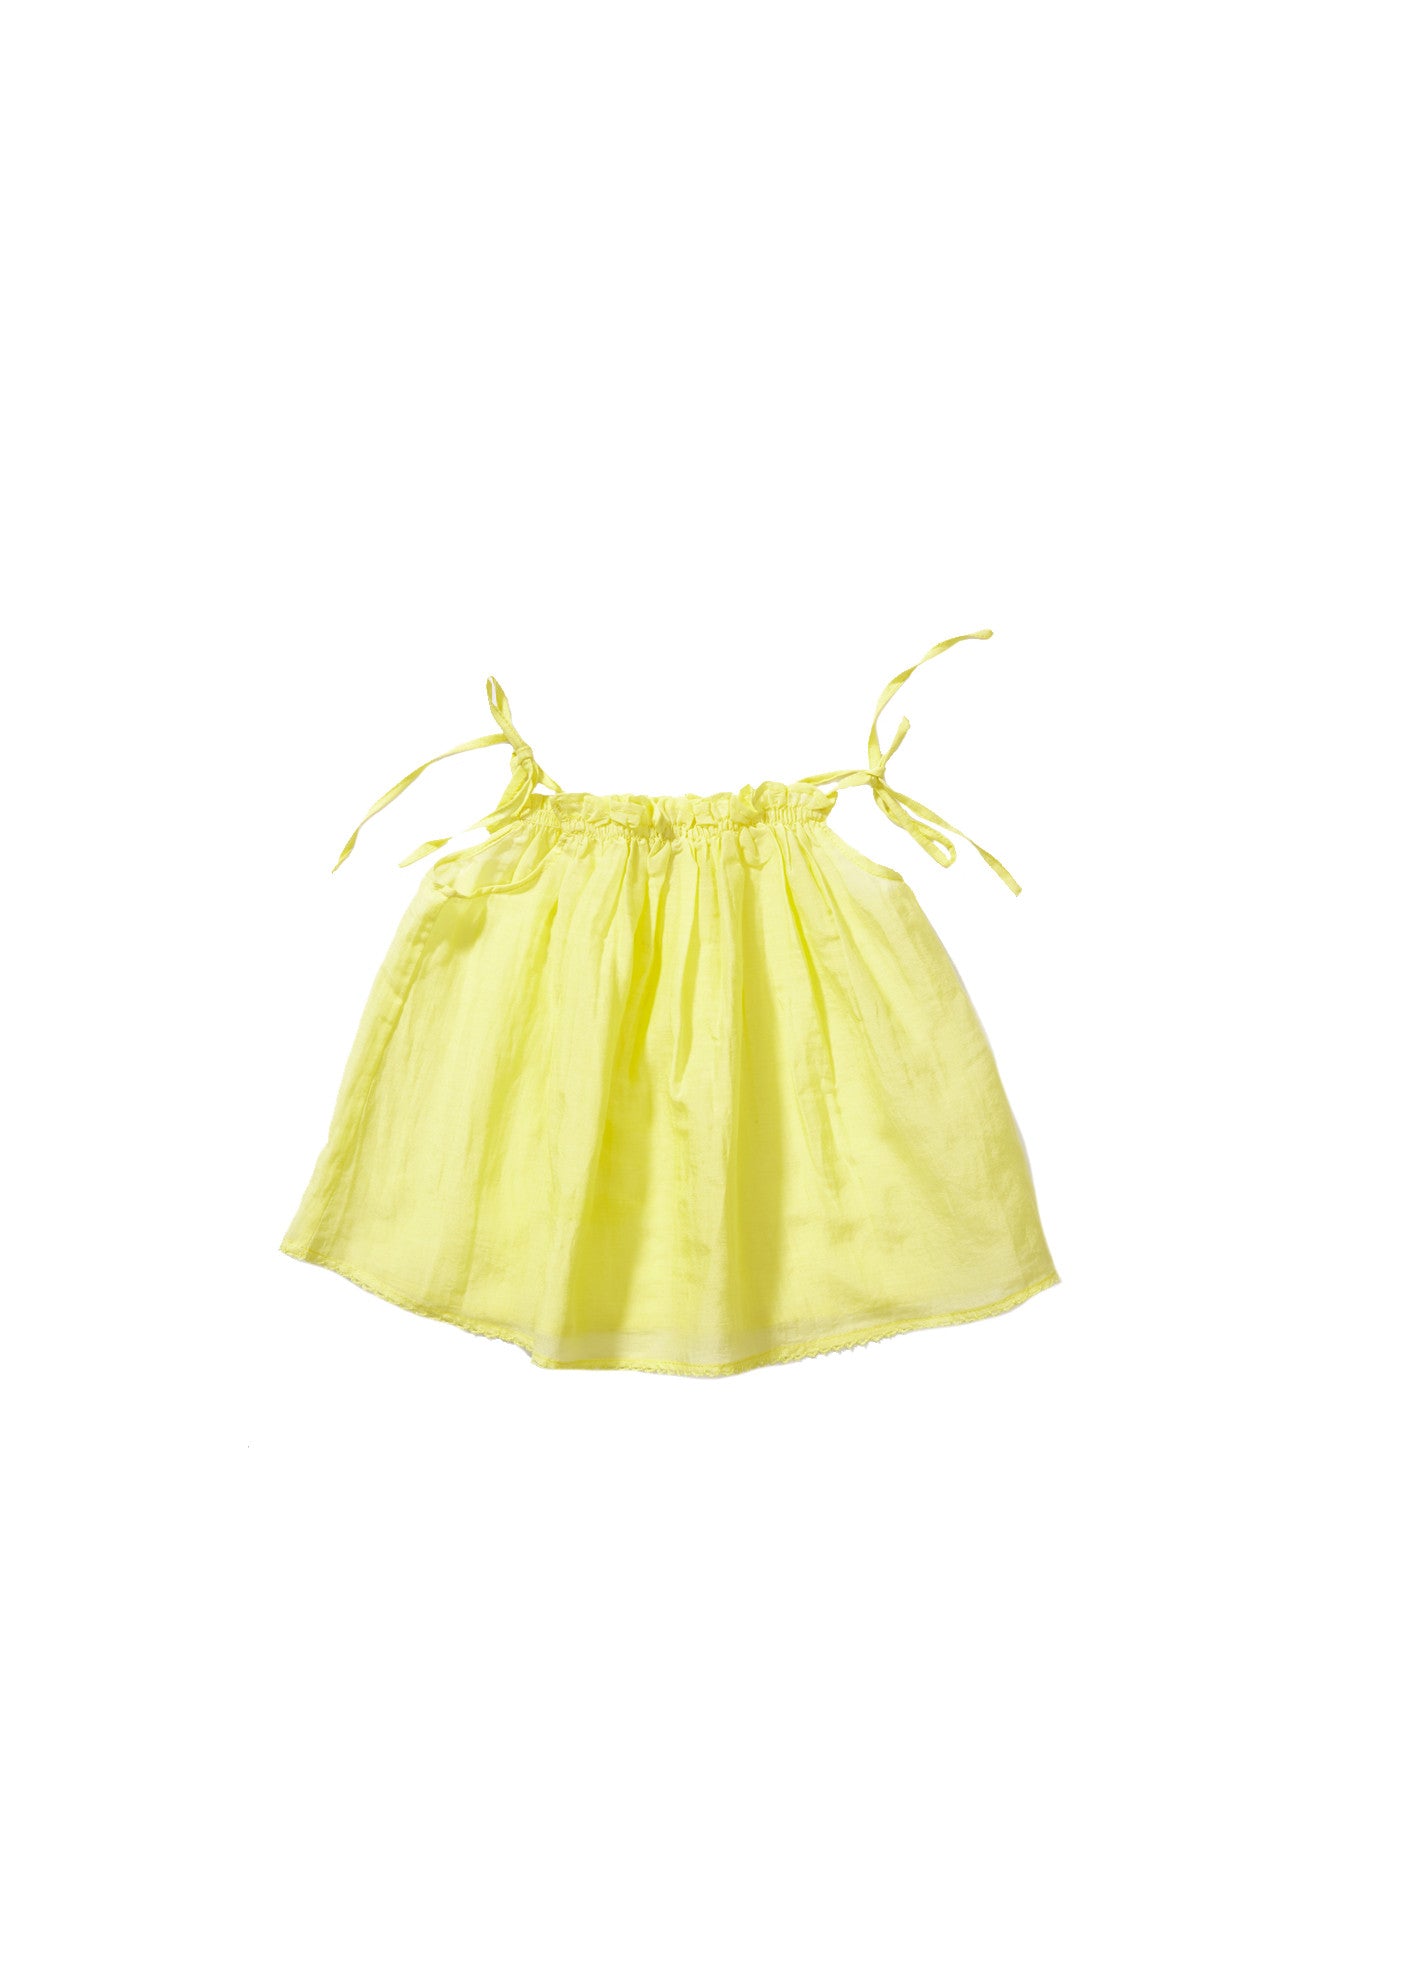 Baby Girls Yellow Cotton Top